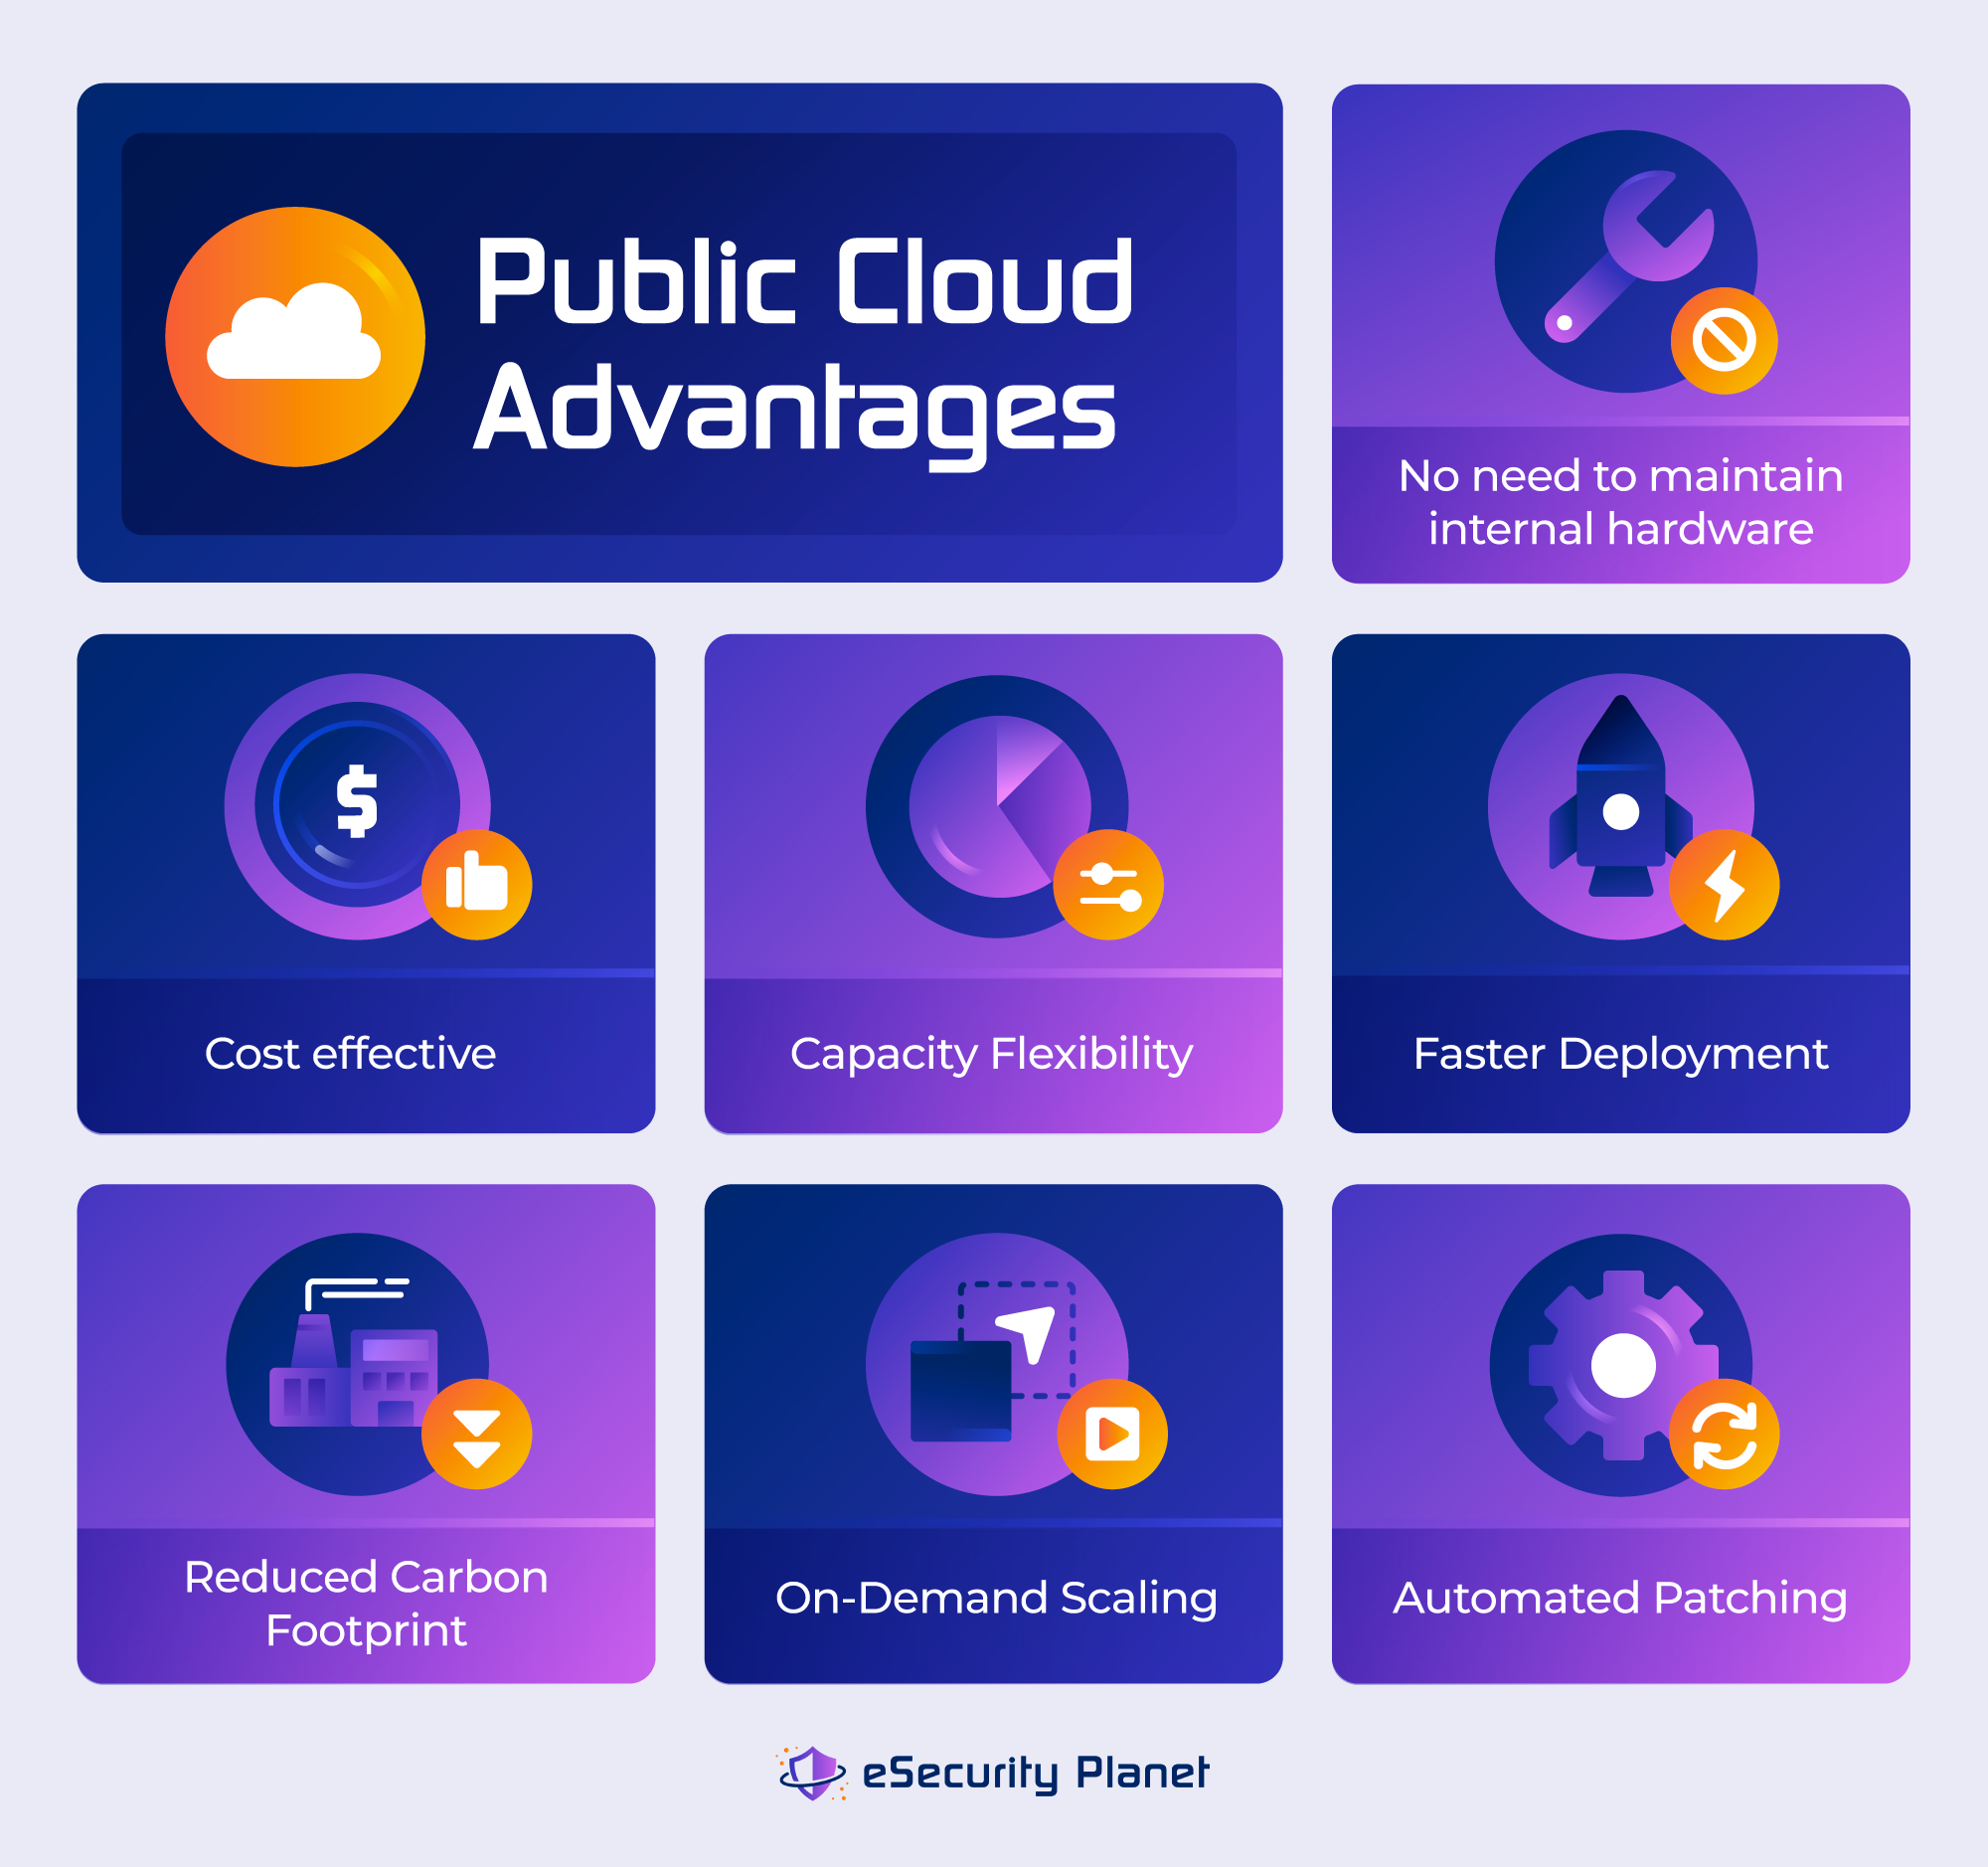 Public cloud advantages infographic.